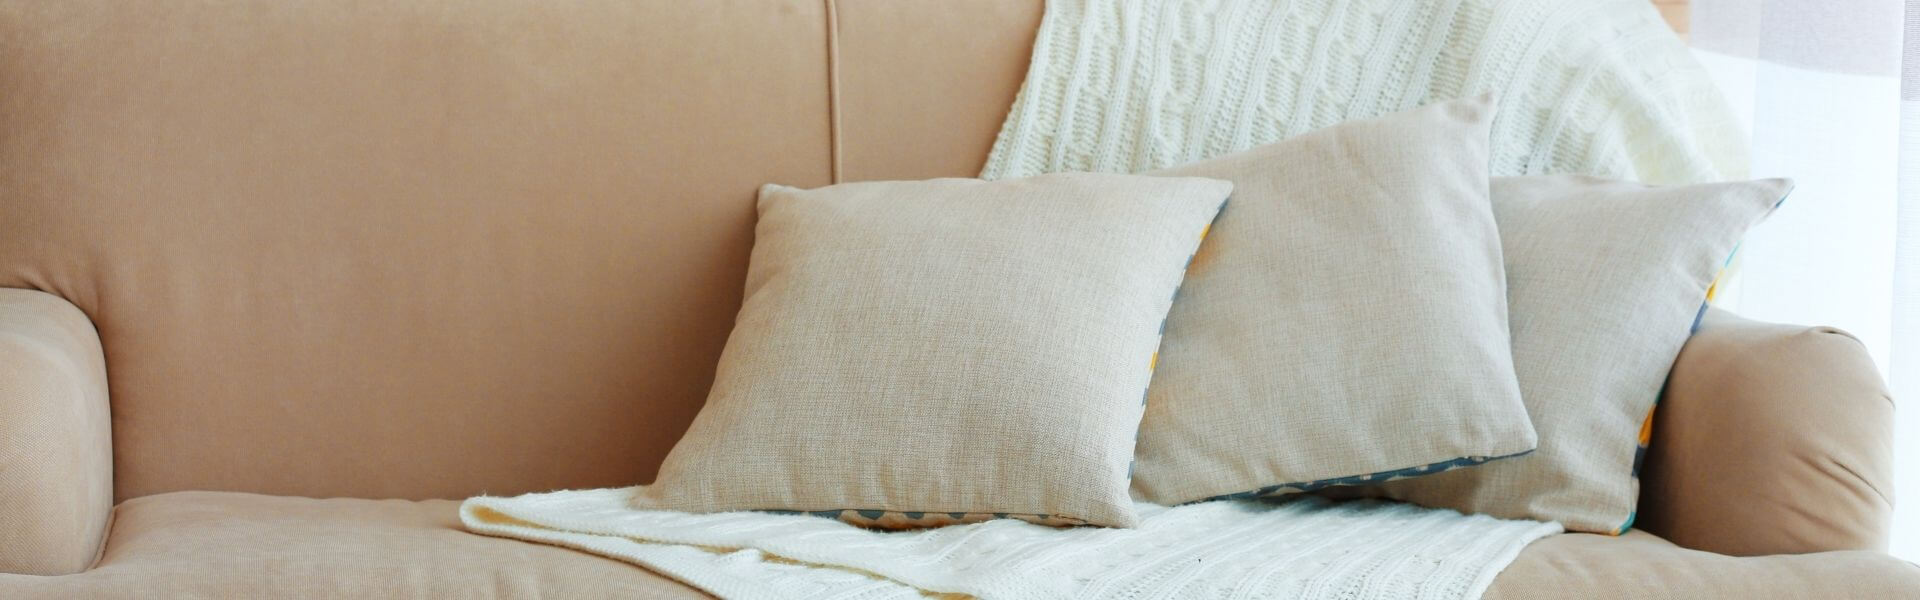 Pillows & Throws - Comfy